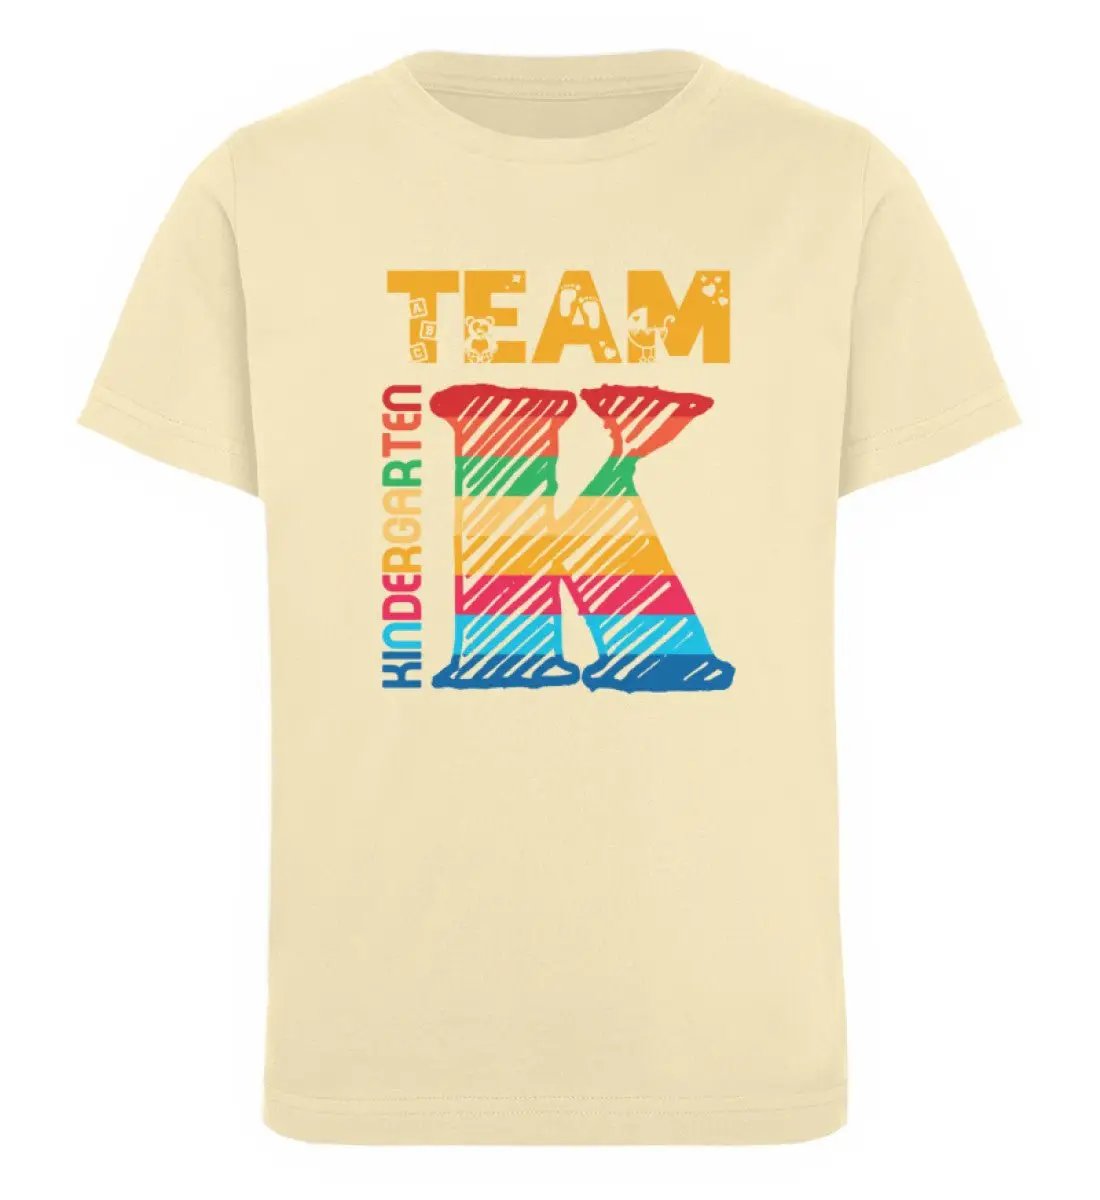 Team Kindergarten - Organic Kinder Mottoshirt - Mini Creator T-Shirt ST/ST-UnserGoldschatz.de